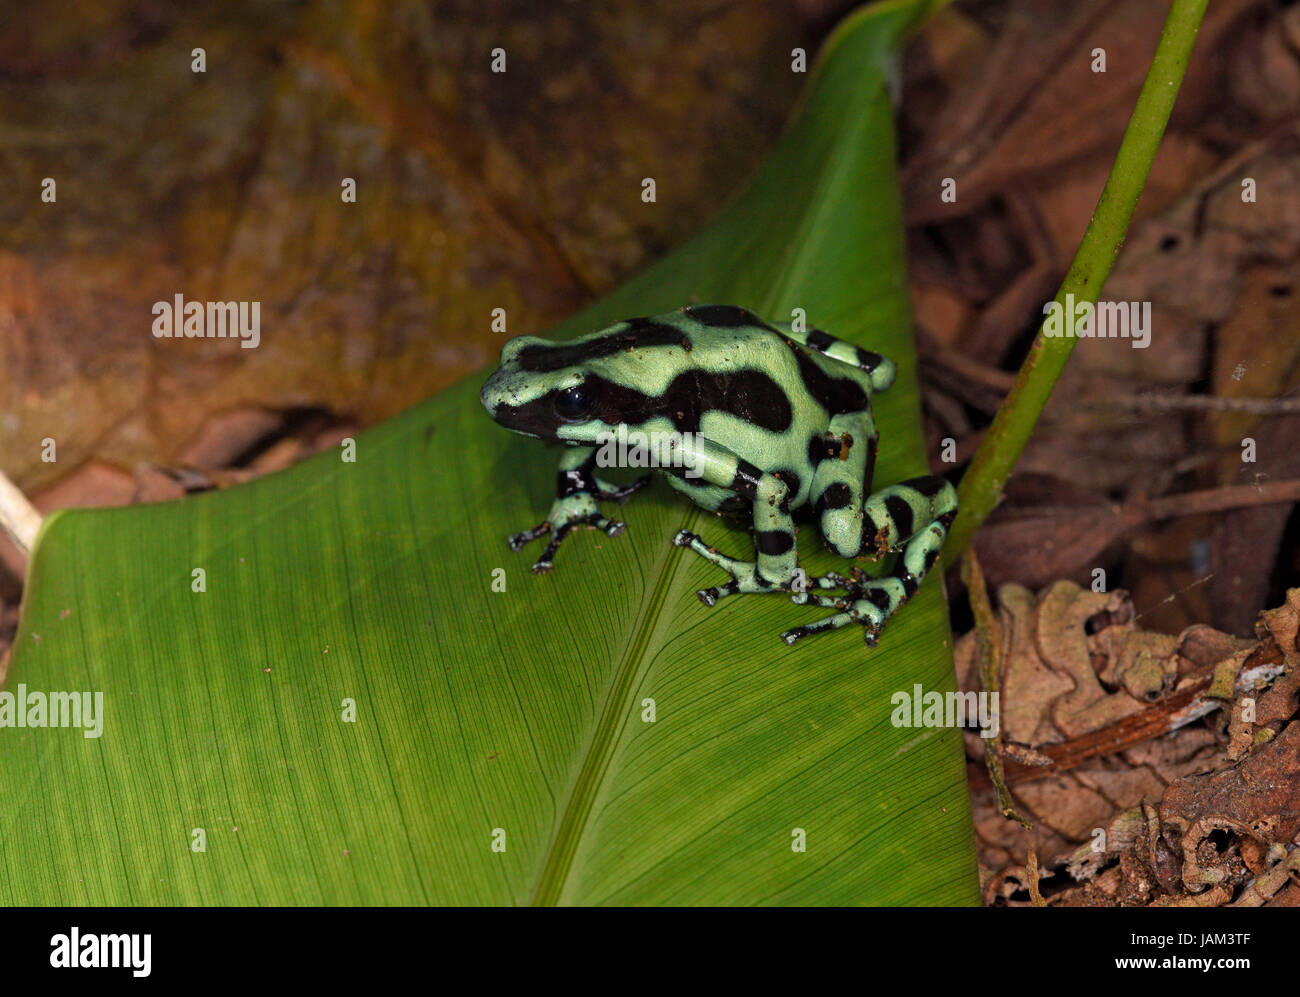 Green Poison Arrow Frog (Dendrobates auratus) assis sur des feuilles tombées au sol, Costa Rica, Mars Banque D'Images